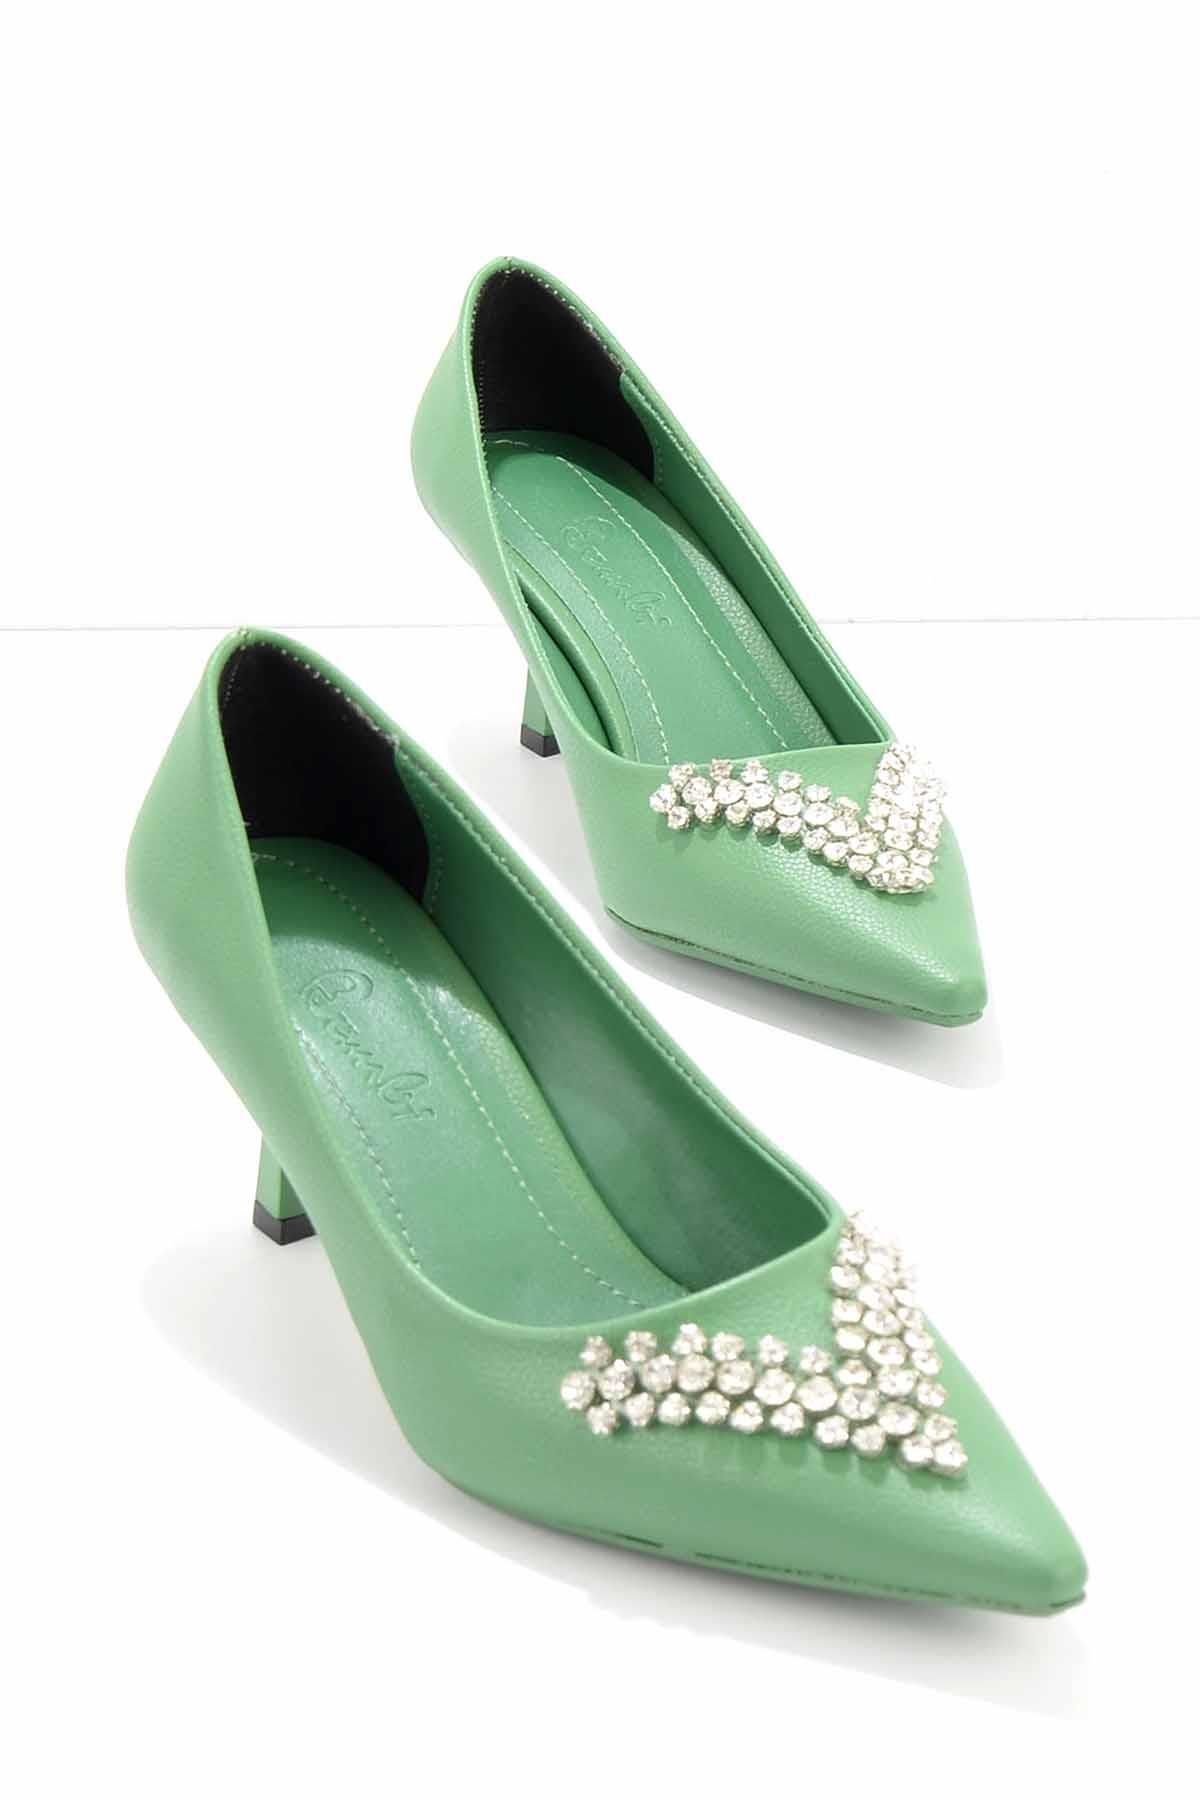 Bambi Yeşil Kadın Klasik Topuklu Ayakkabı K01840062009